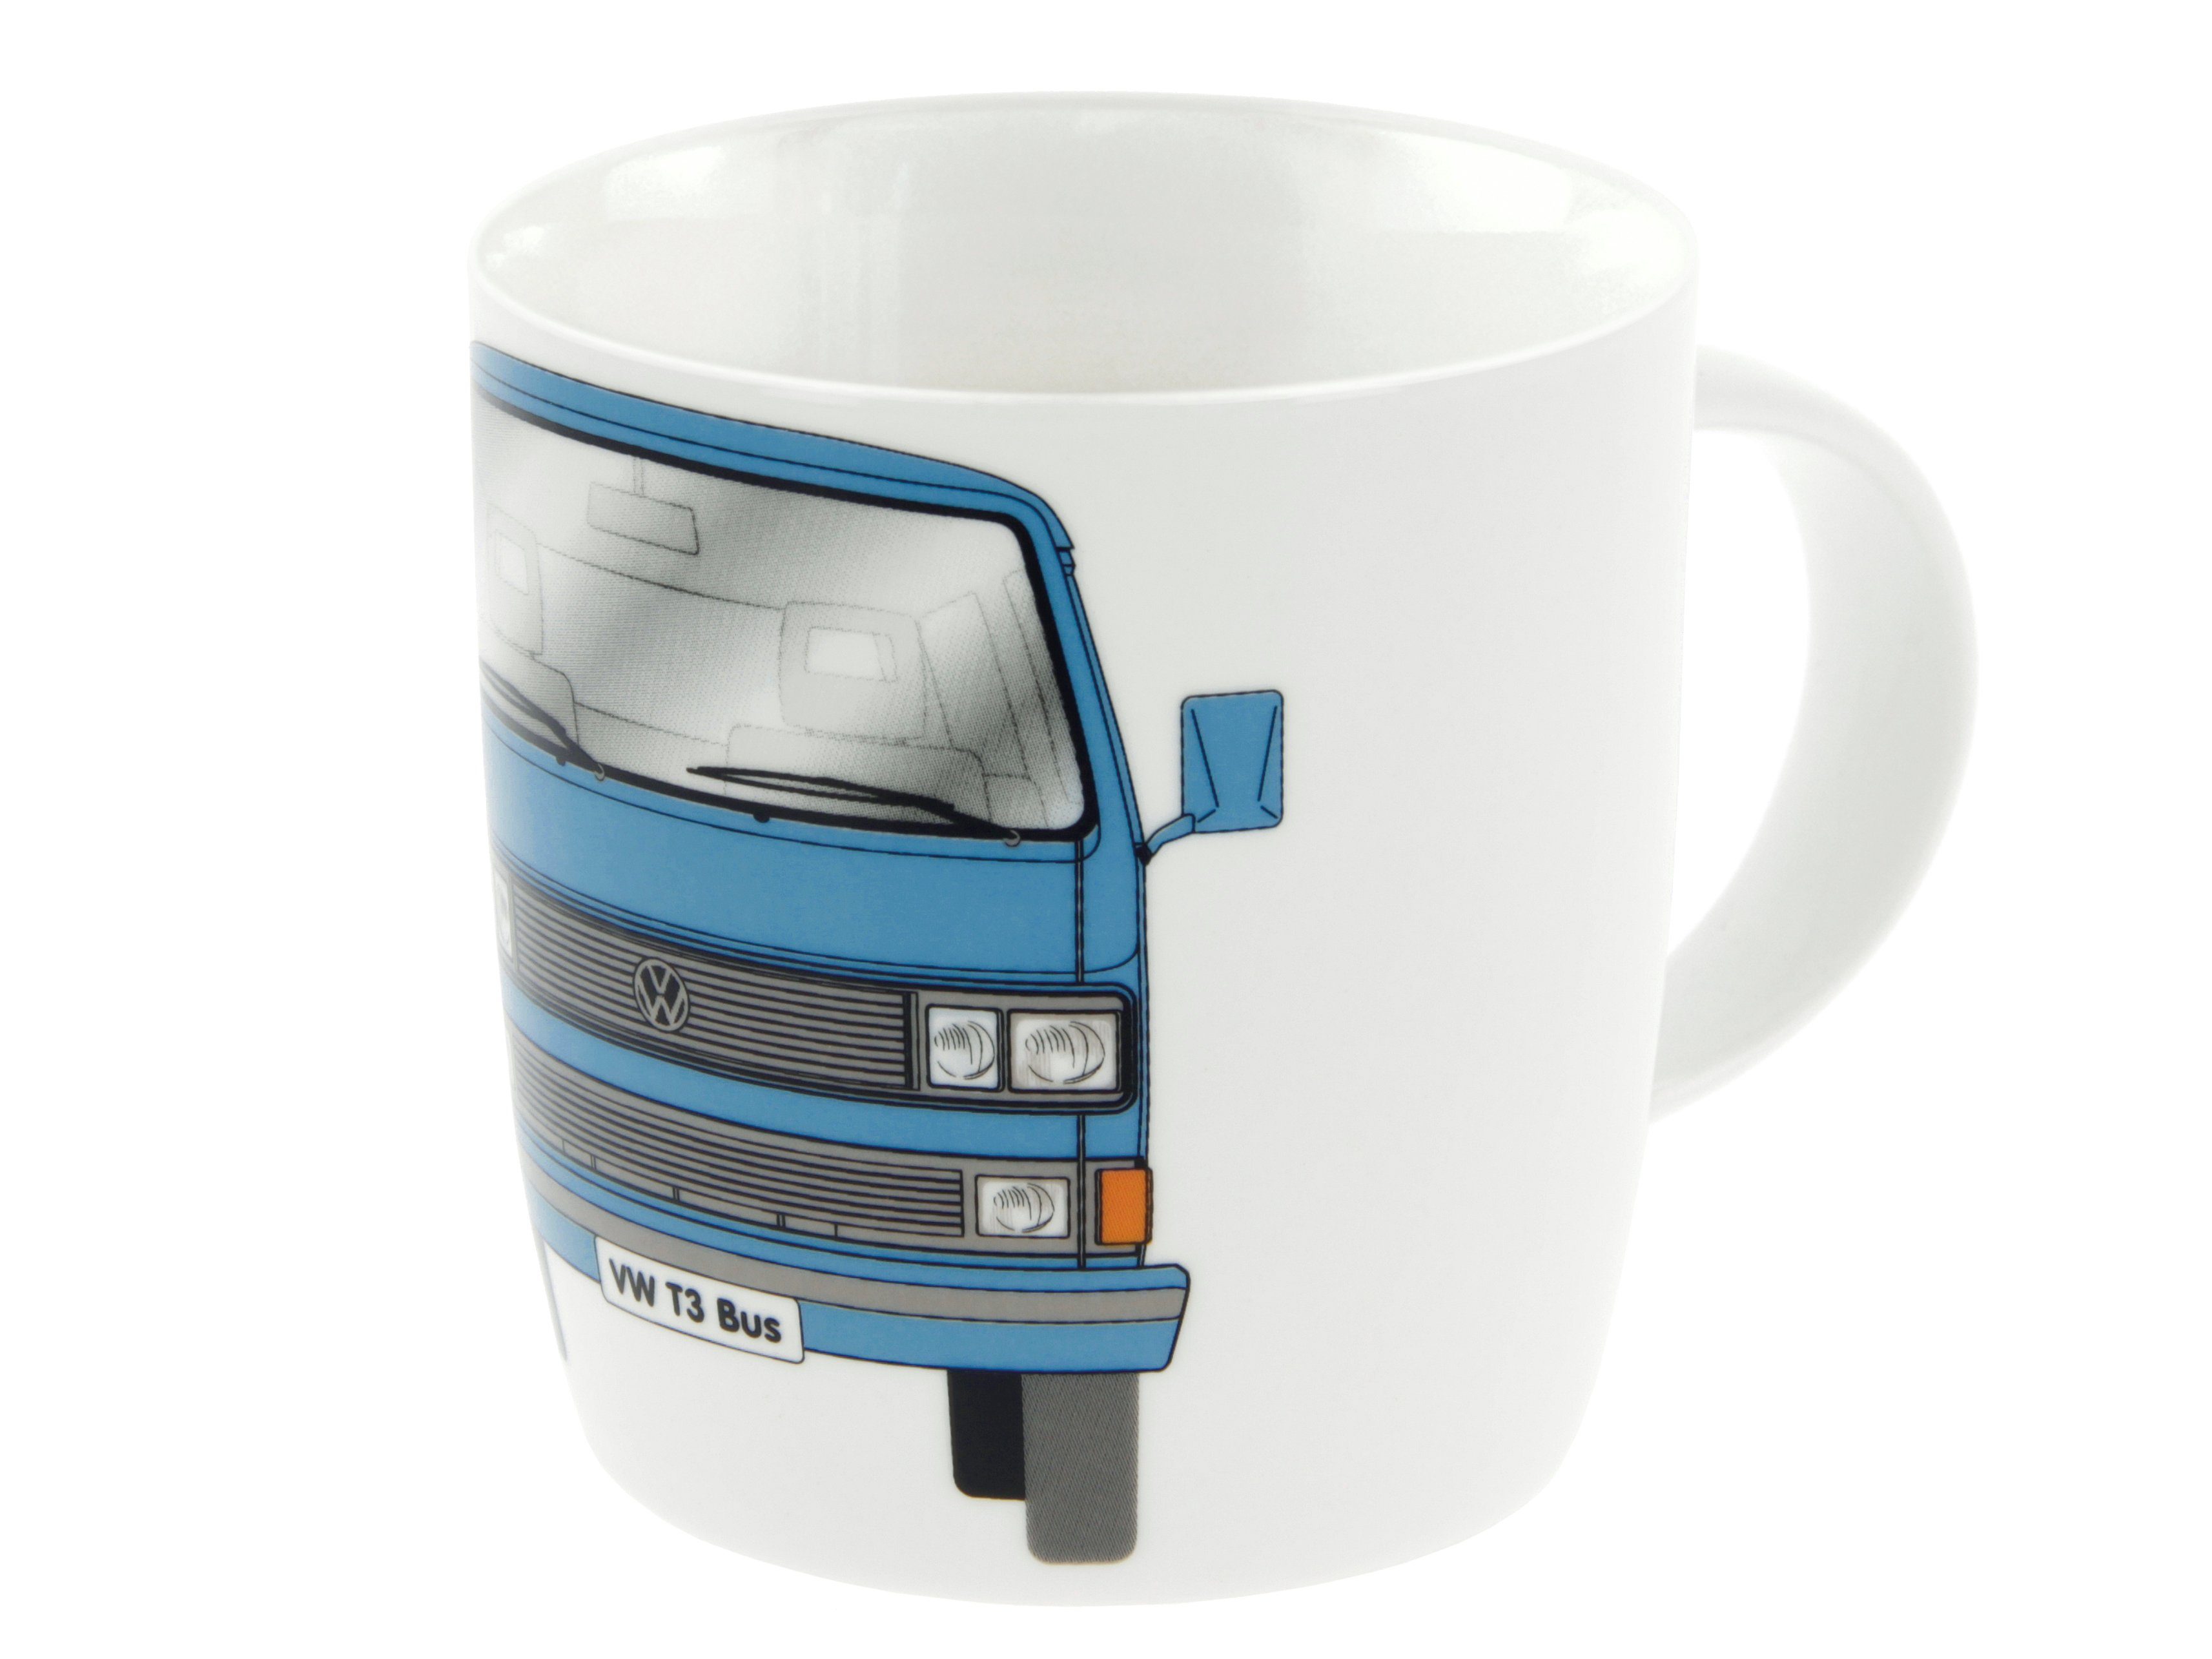 VW Collection by BRISA Tasse Volkswagen Große Keramik Kaffee-Tee-Cappuccino-Tasse-Becher-Haferl, New Bone China, im T3 Bulli Bus Design Bus Front in Blau Front/Blau